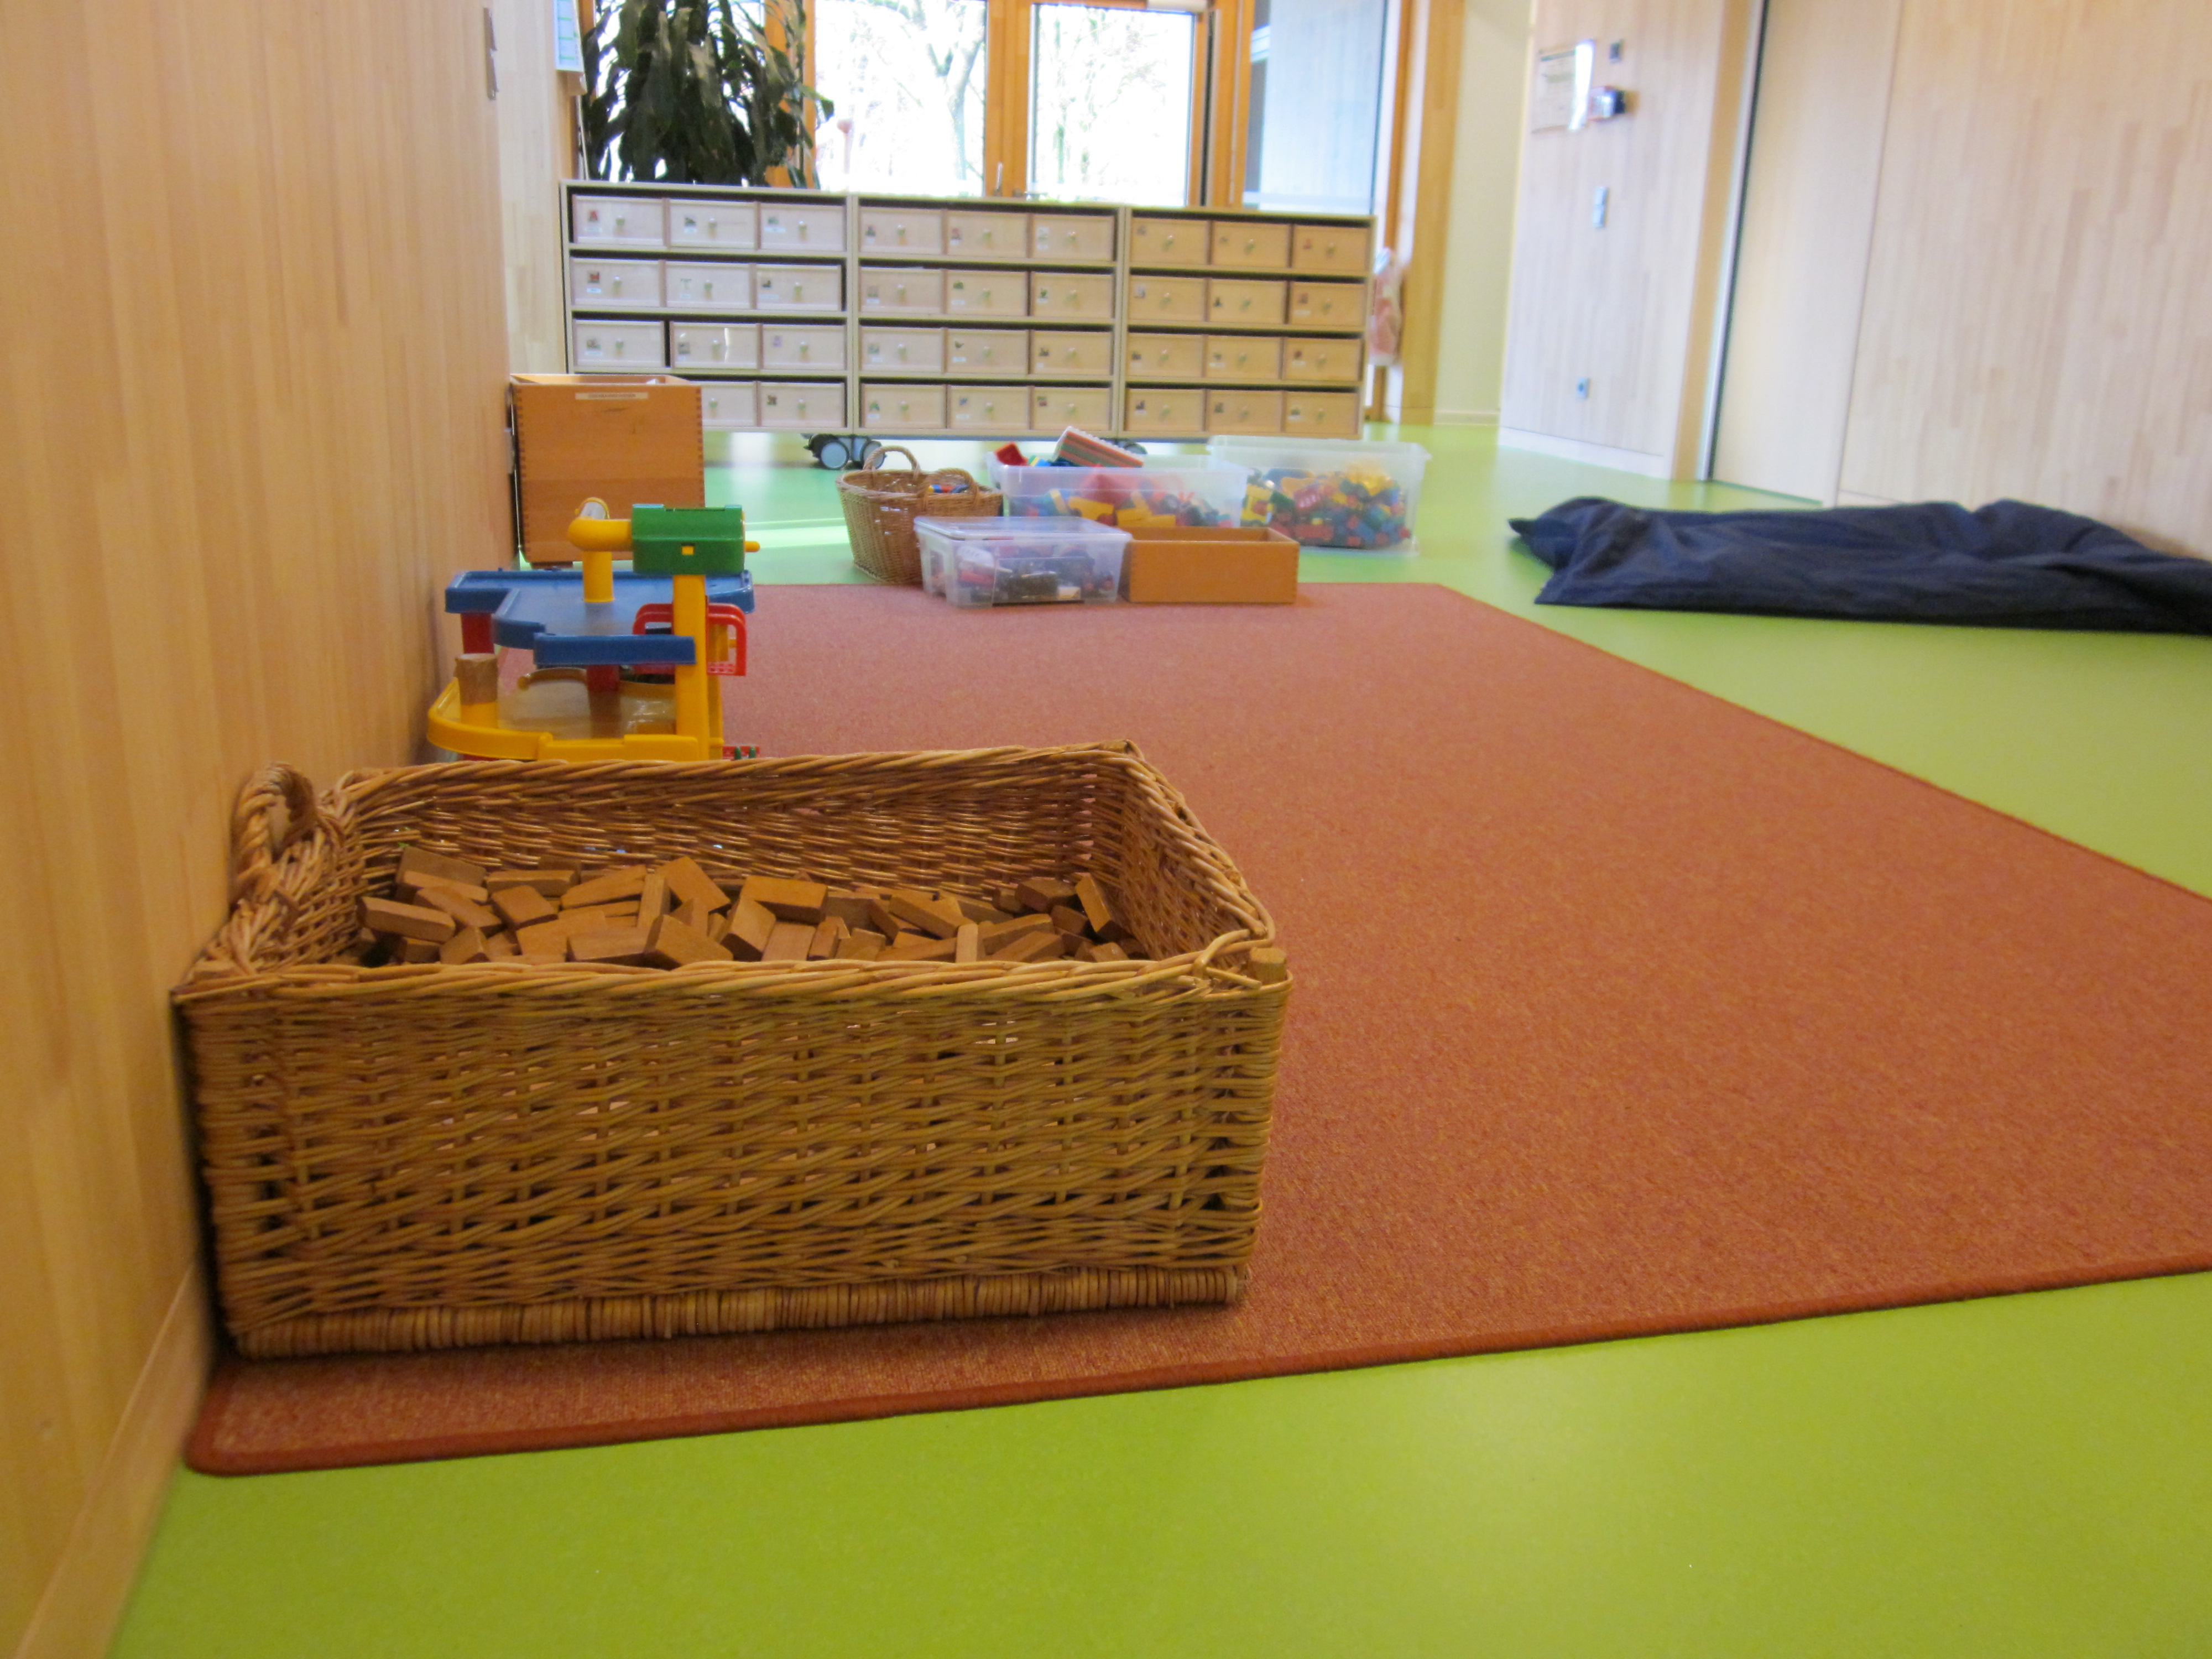 Hier ist die Bauecke im Kindergarten zu sehen. Im Vordergrund steht ein Weidenkorb mit Holzklötzen, dahinter ein Parkhaus und im Hintergrund stehen Boxen mit Bausteinen.